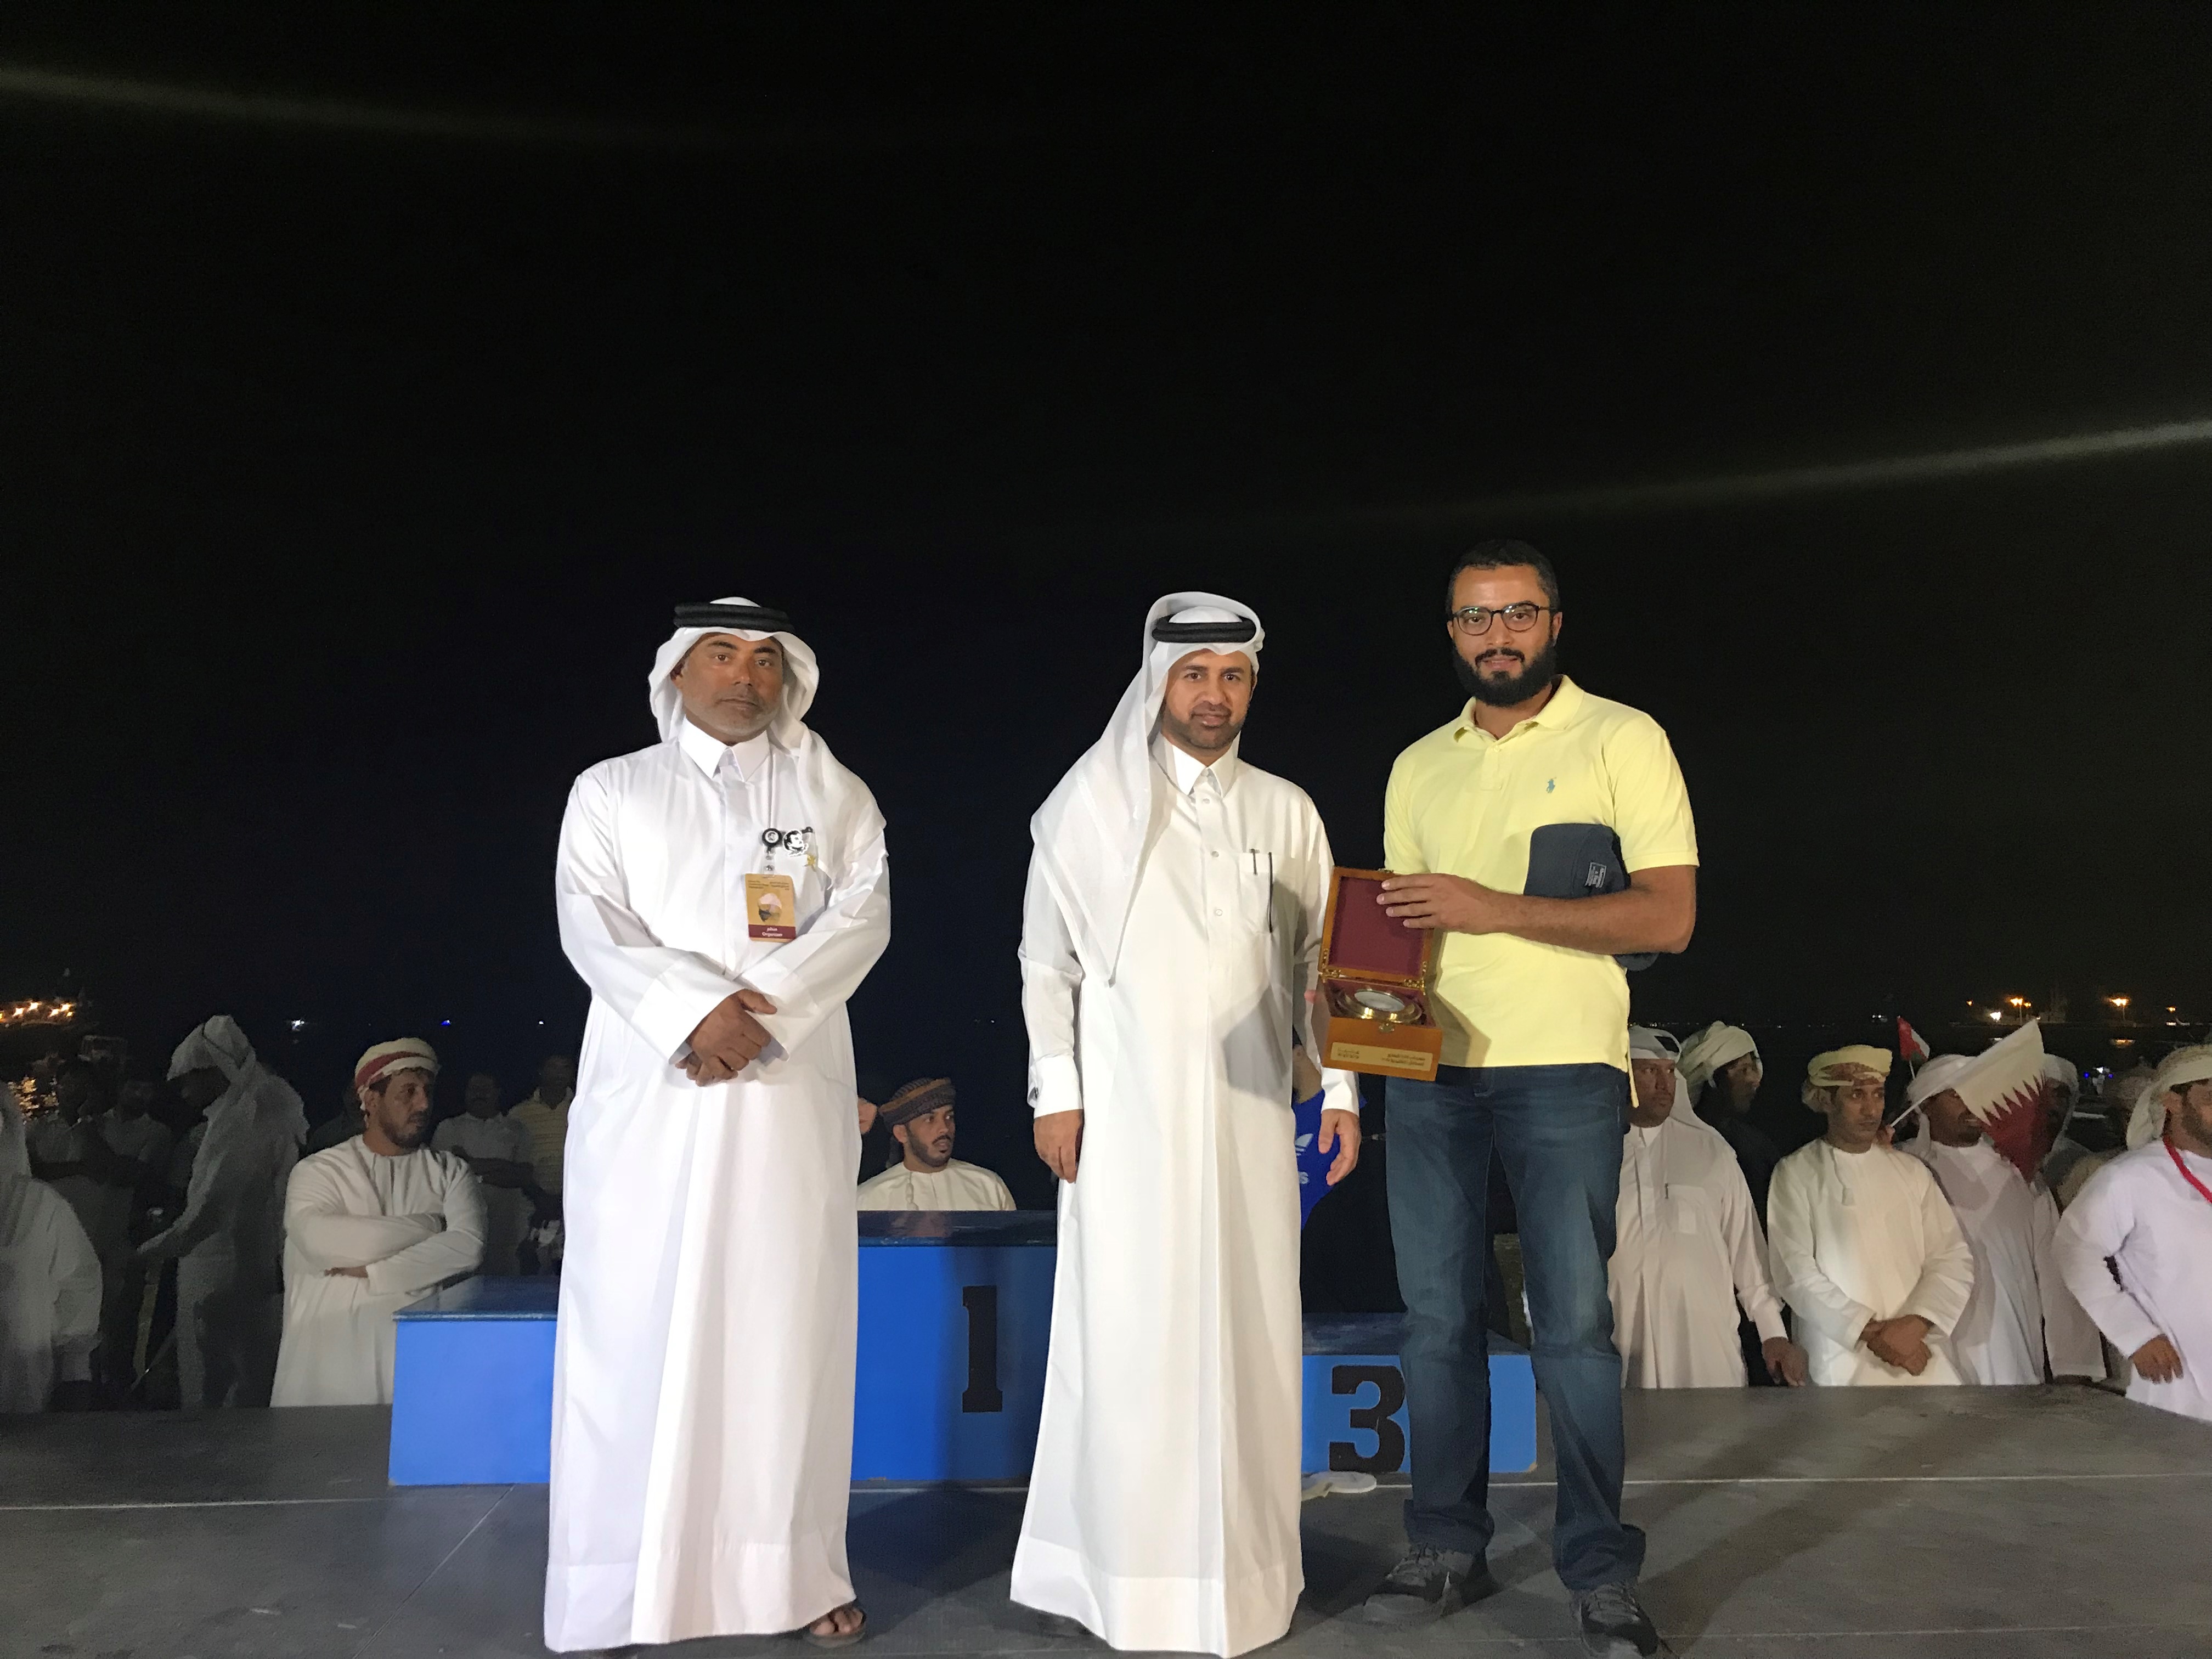 فريق (فتح الخير) بقيادة النوخذة عبدالله الراشد يحقق المركز الثاني في مسابقة الغوص على اللؤلؤ ضمن مهرجان كتارا للمحامل التقليدية